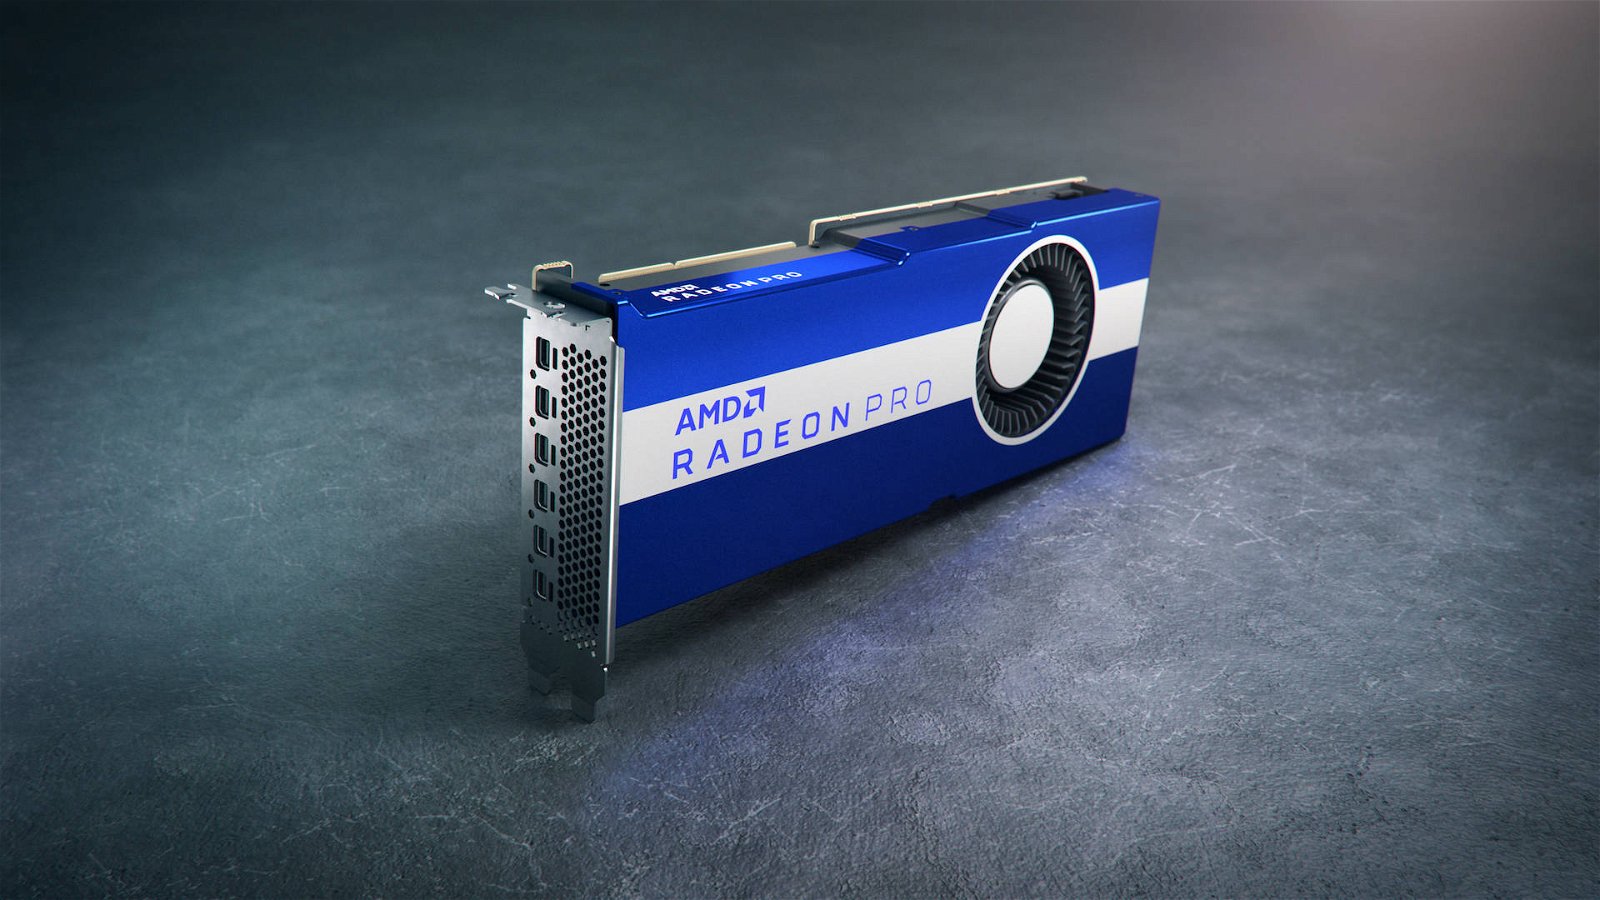 Immagine di AMD, sarà questa la prossima Radeon Pro con GPU Navi?